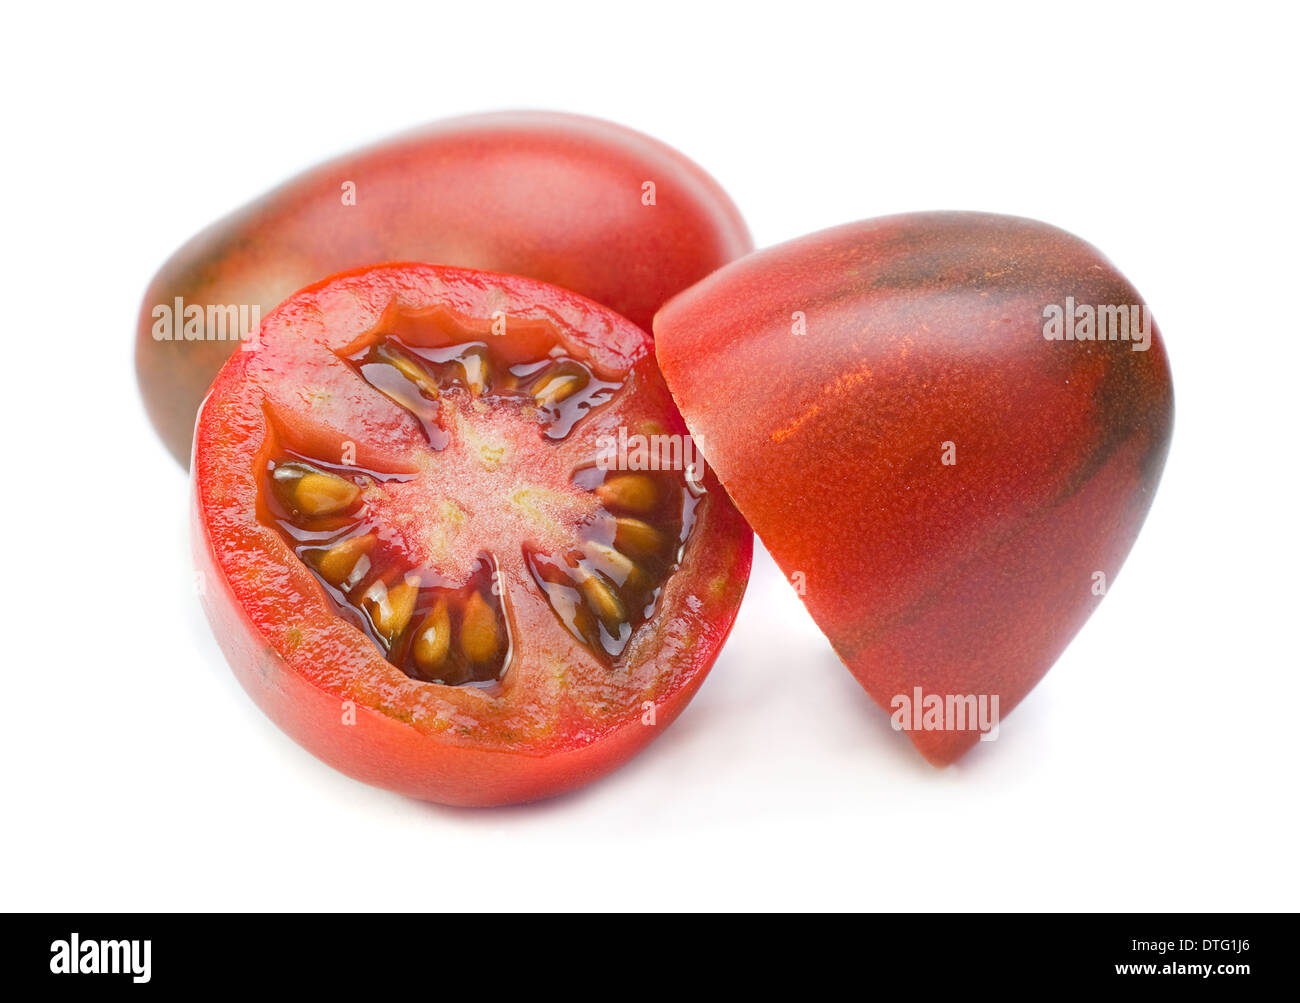 Red cherry tomato closeup on white Stock Photo